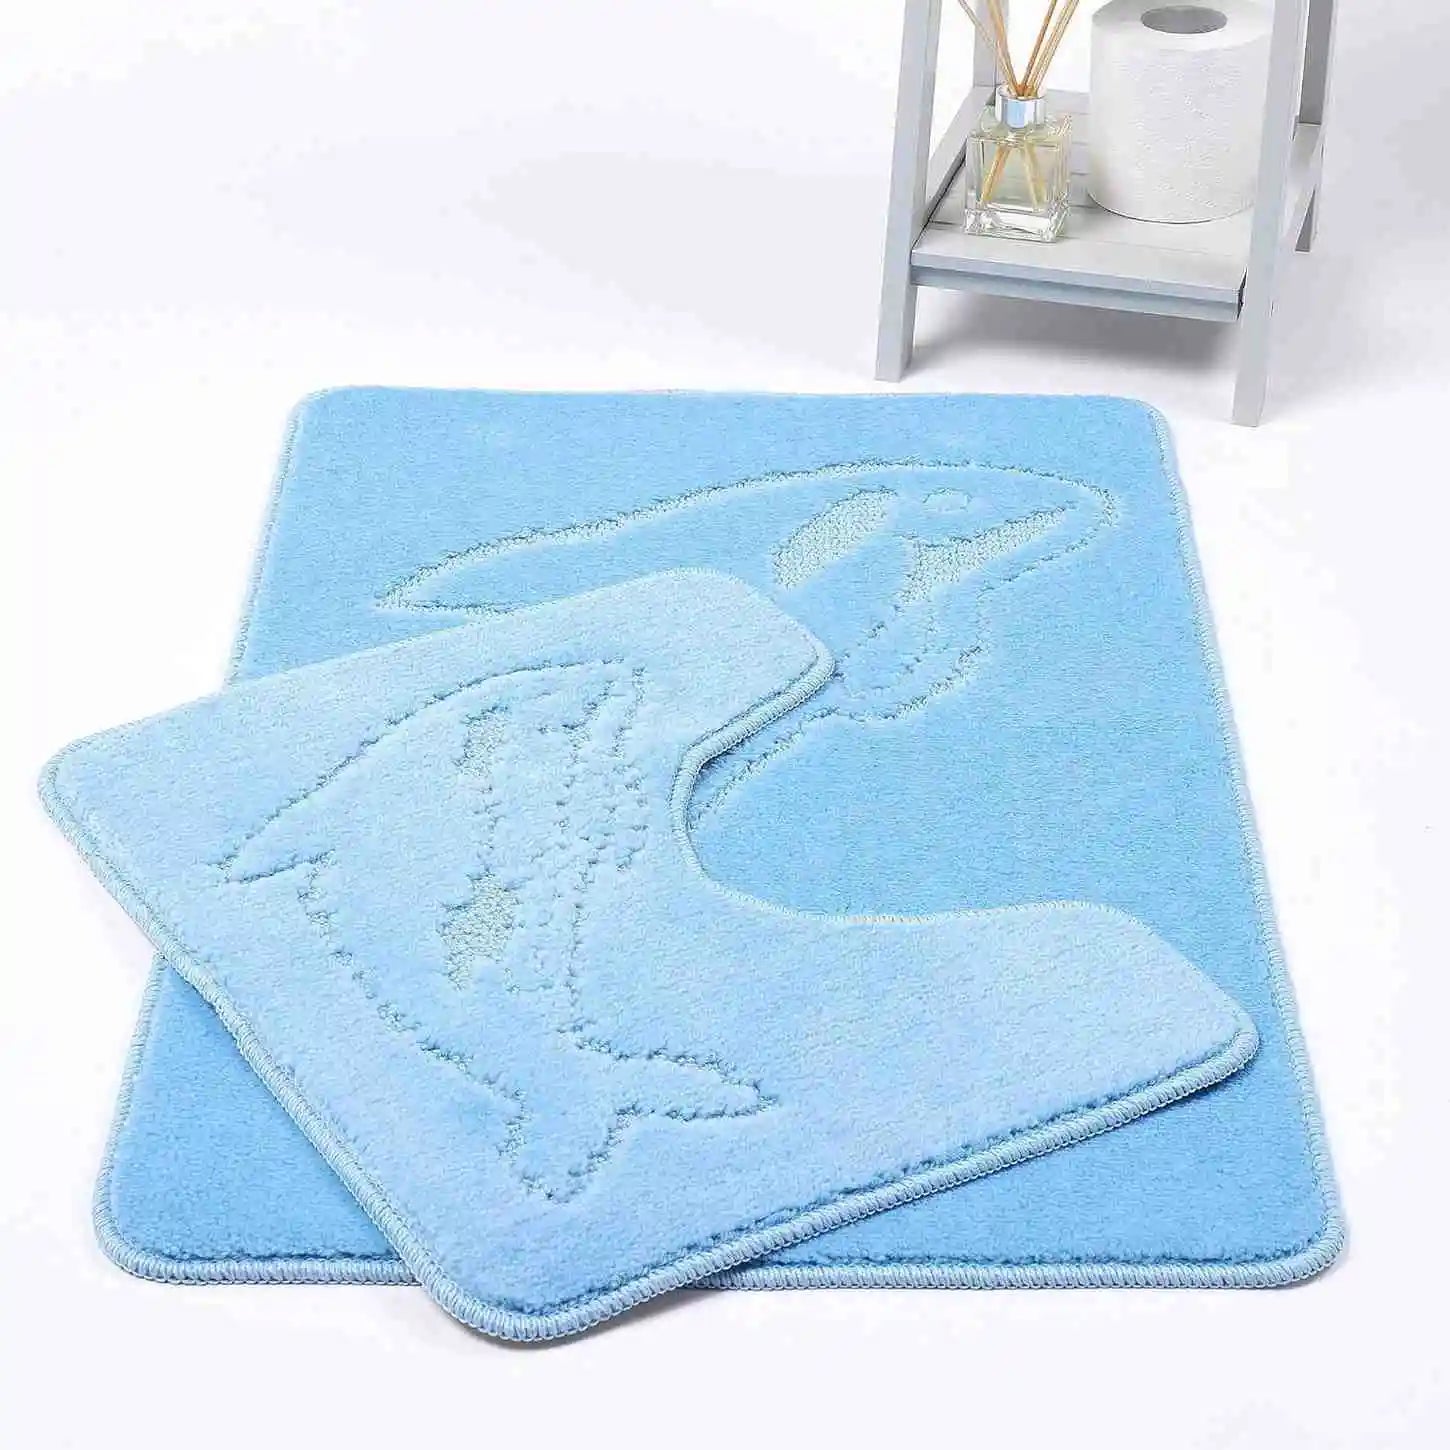 Dolphin bath mat sky blue